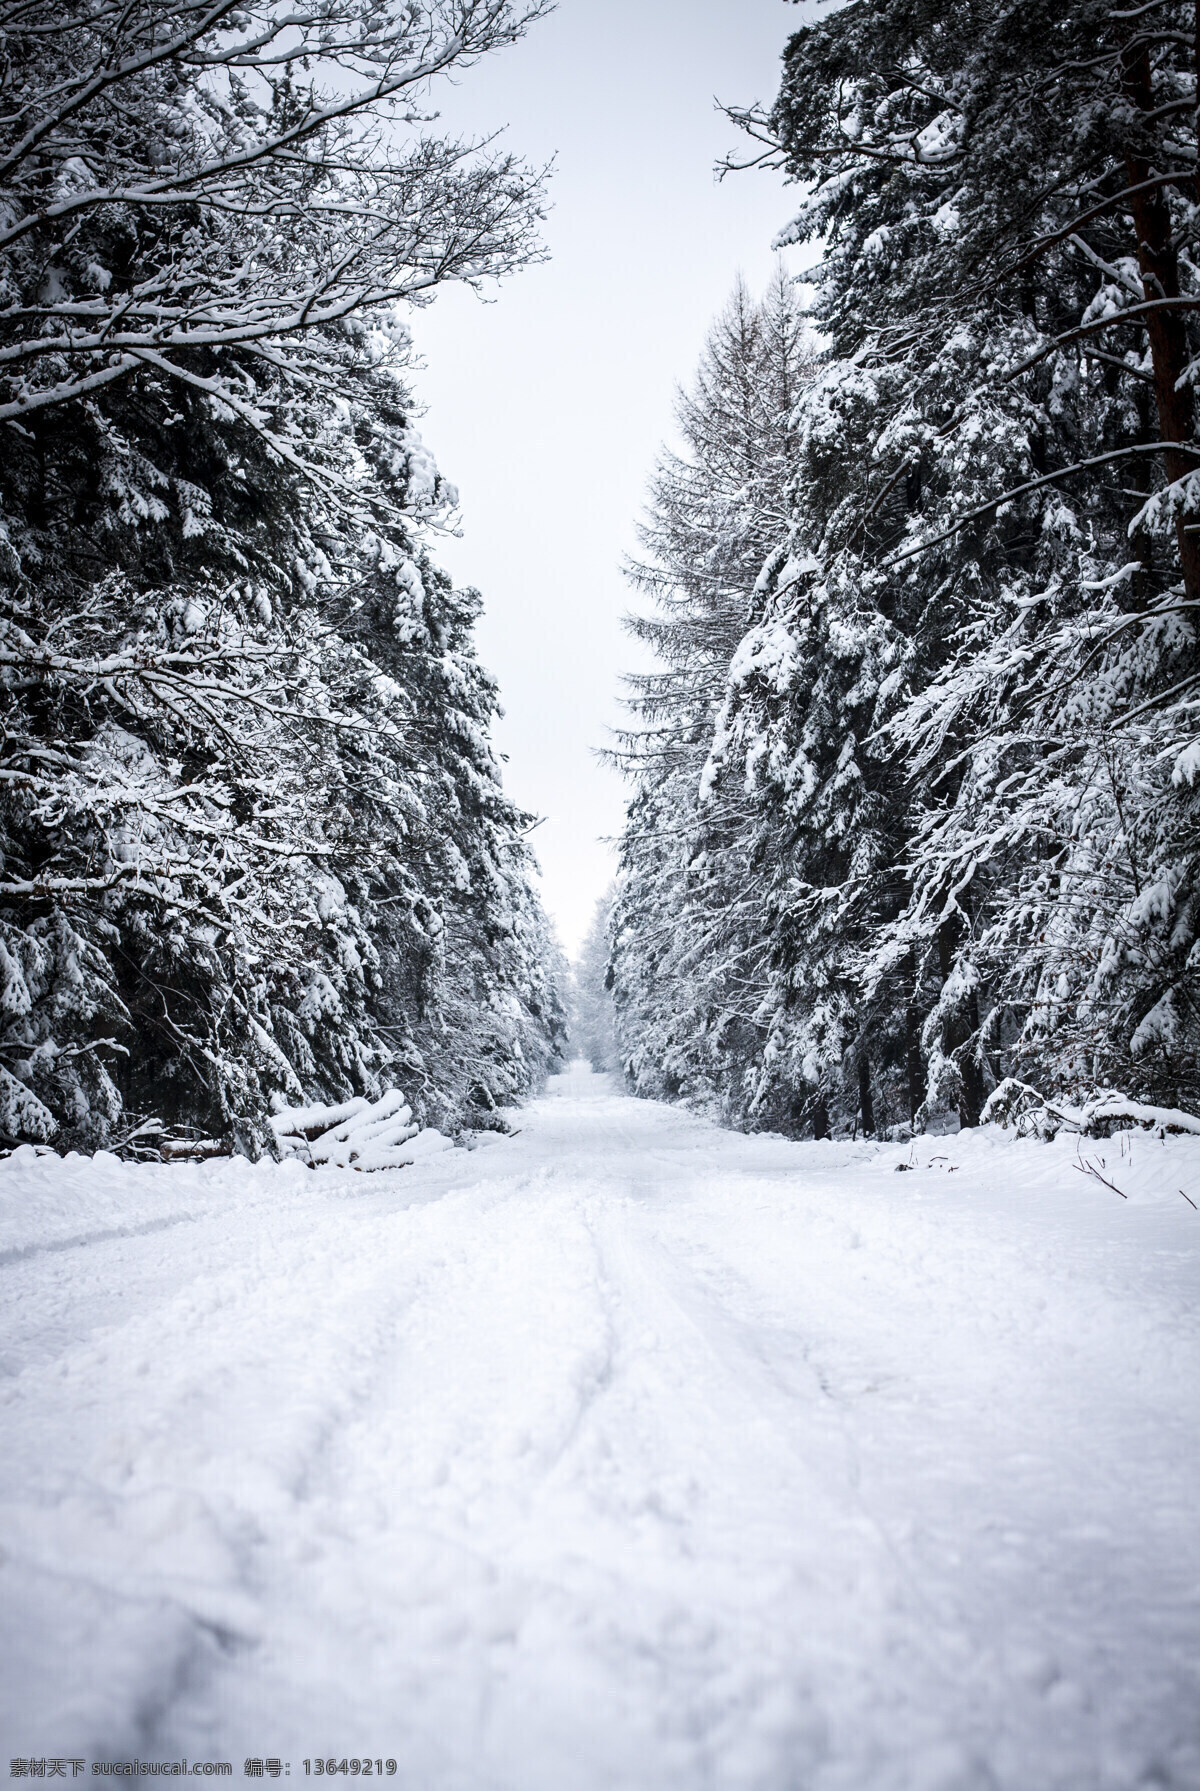 树林 小路 冬天 雪景 冬天雪景 冬季风景 雪地风景 树林风景 自然风景 美丽风景 美景 景色 雪景图片 风景图片